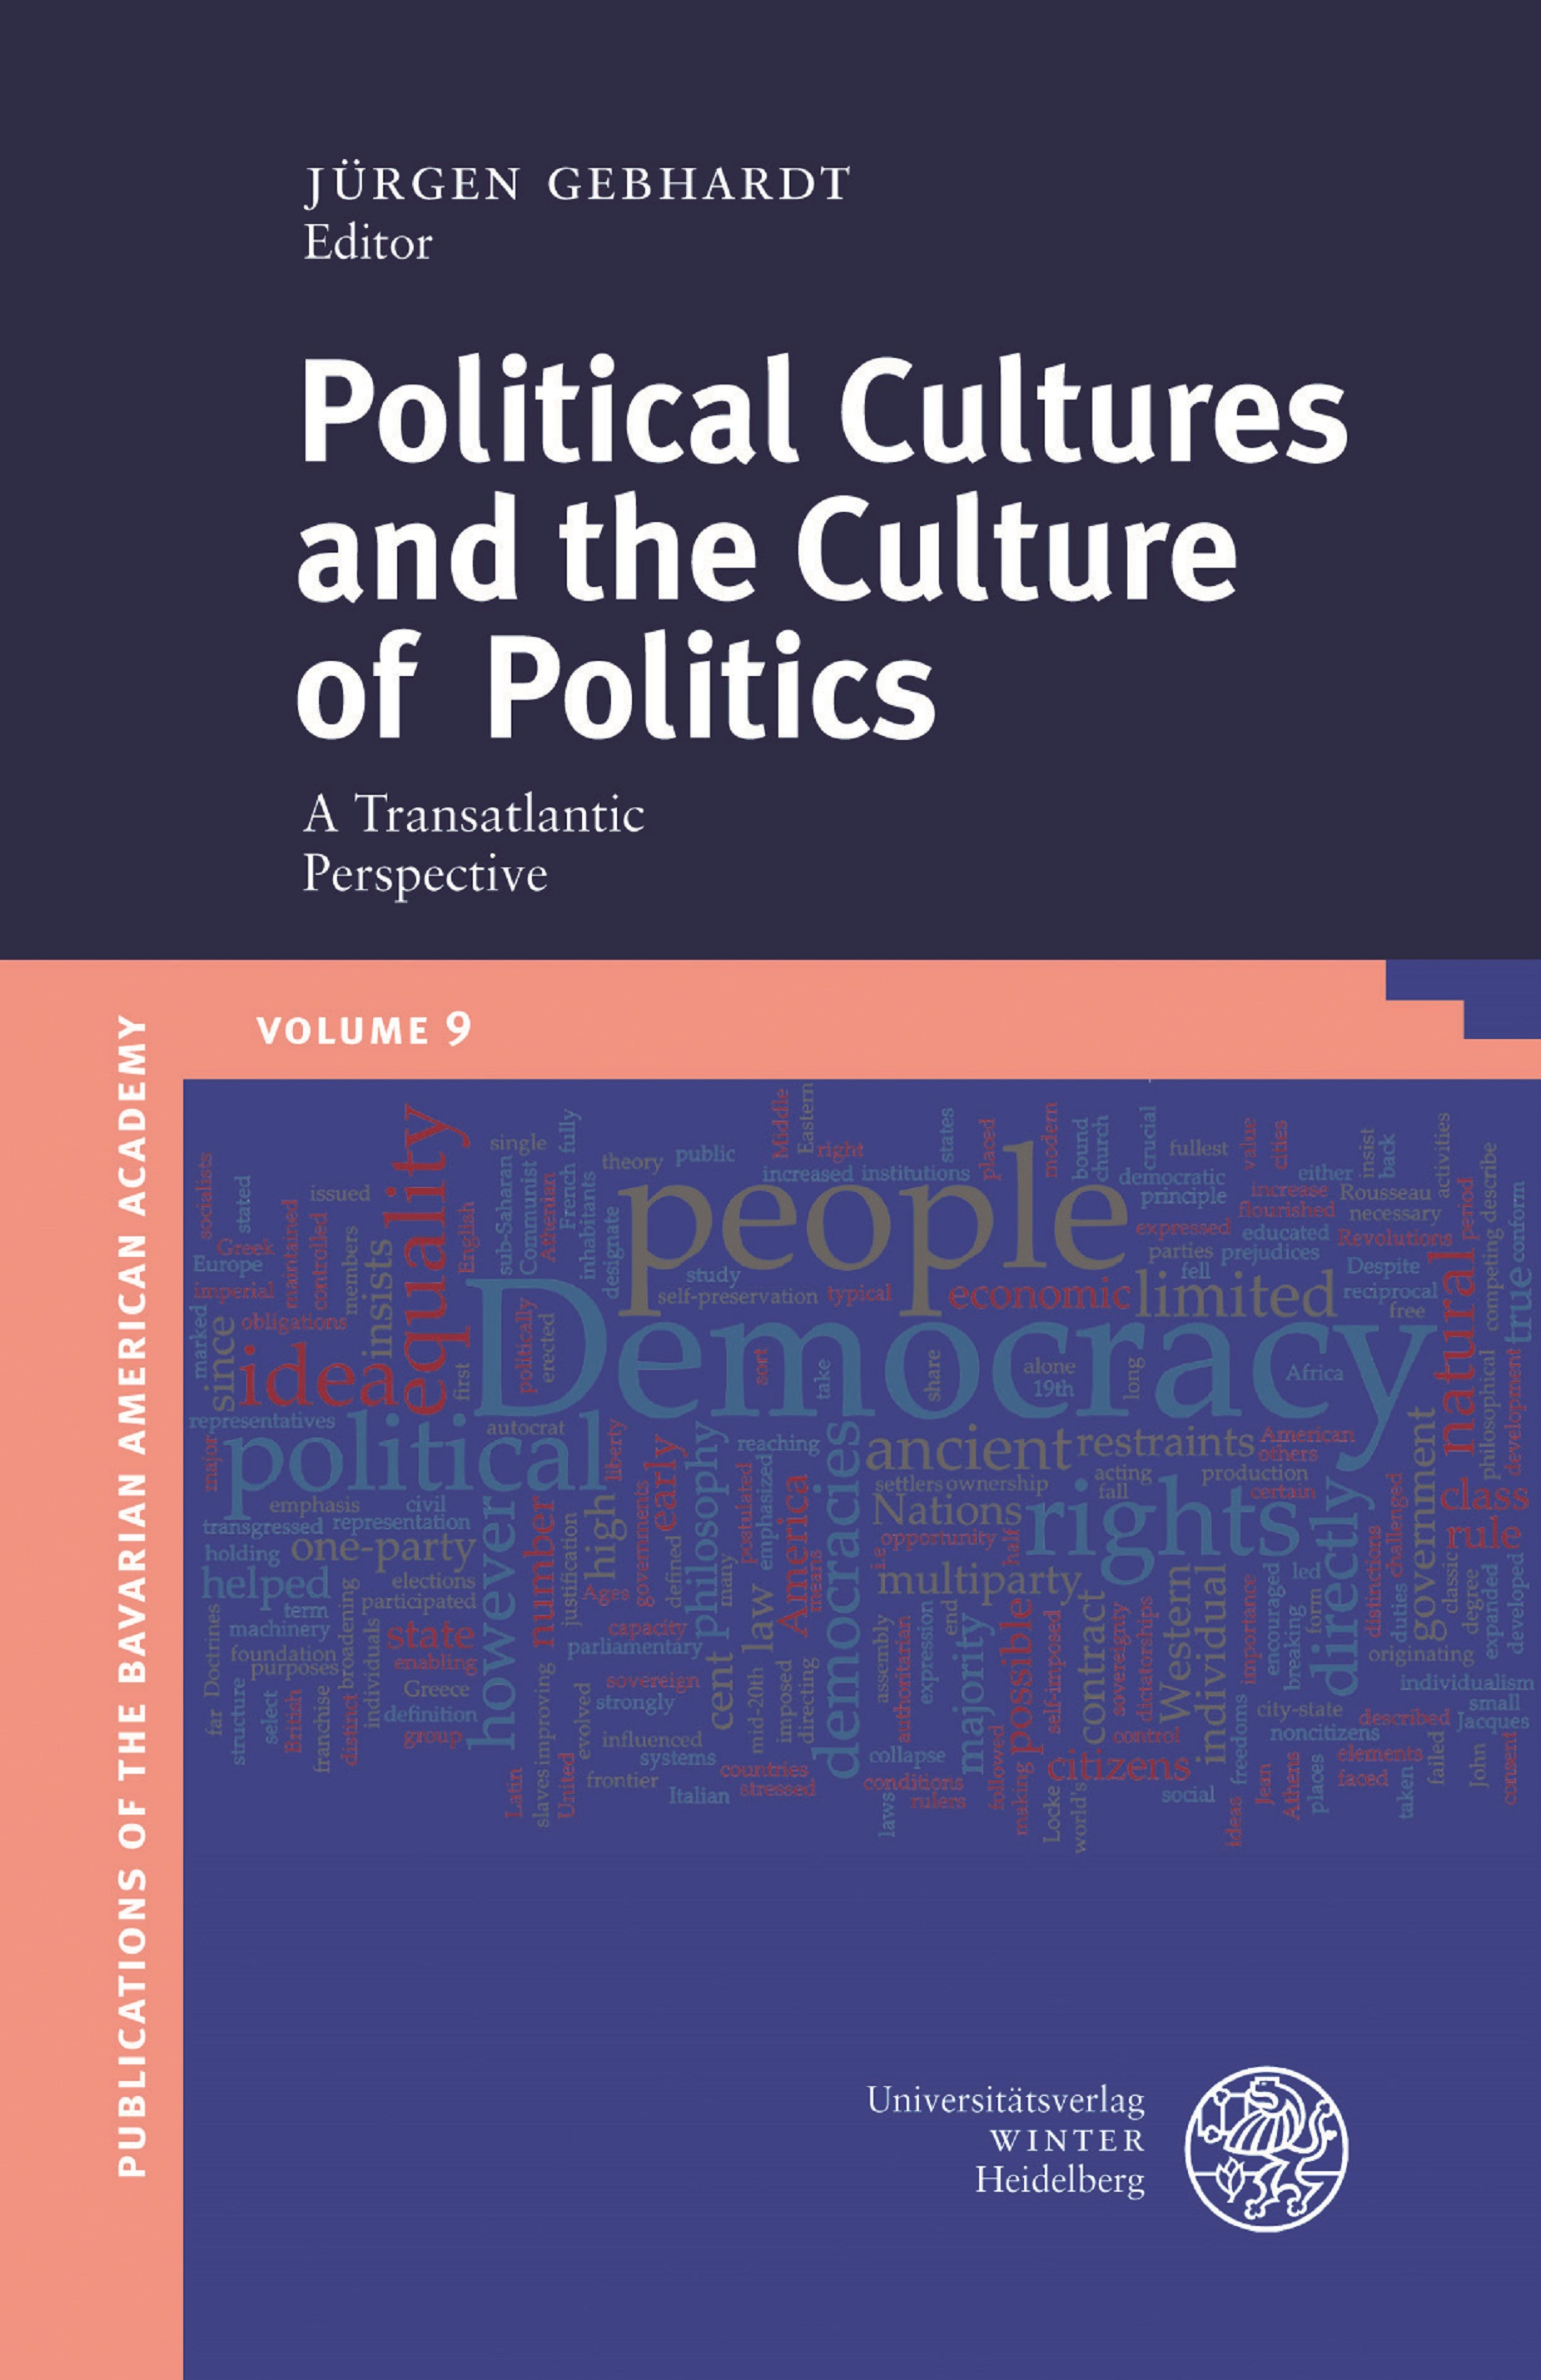 BAA-Publikation Vol. 9 Political Cultures and the Culture of Politics